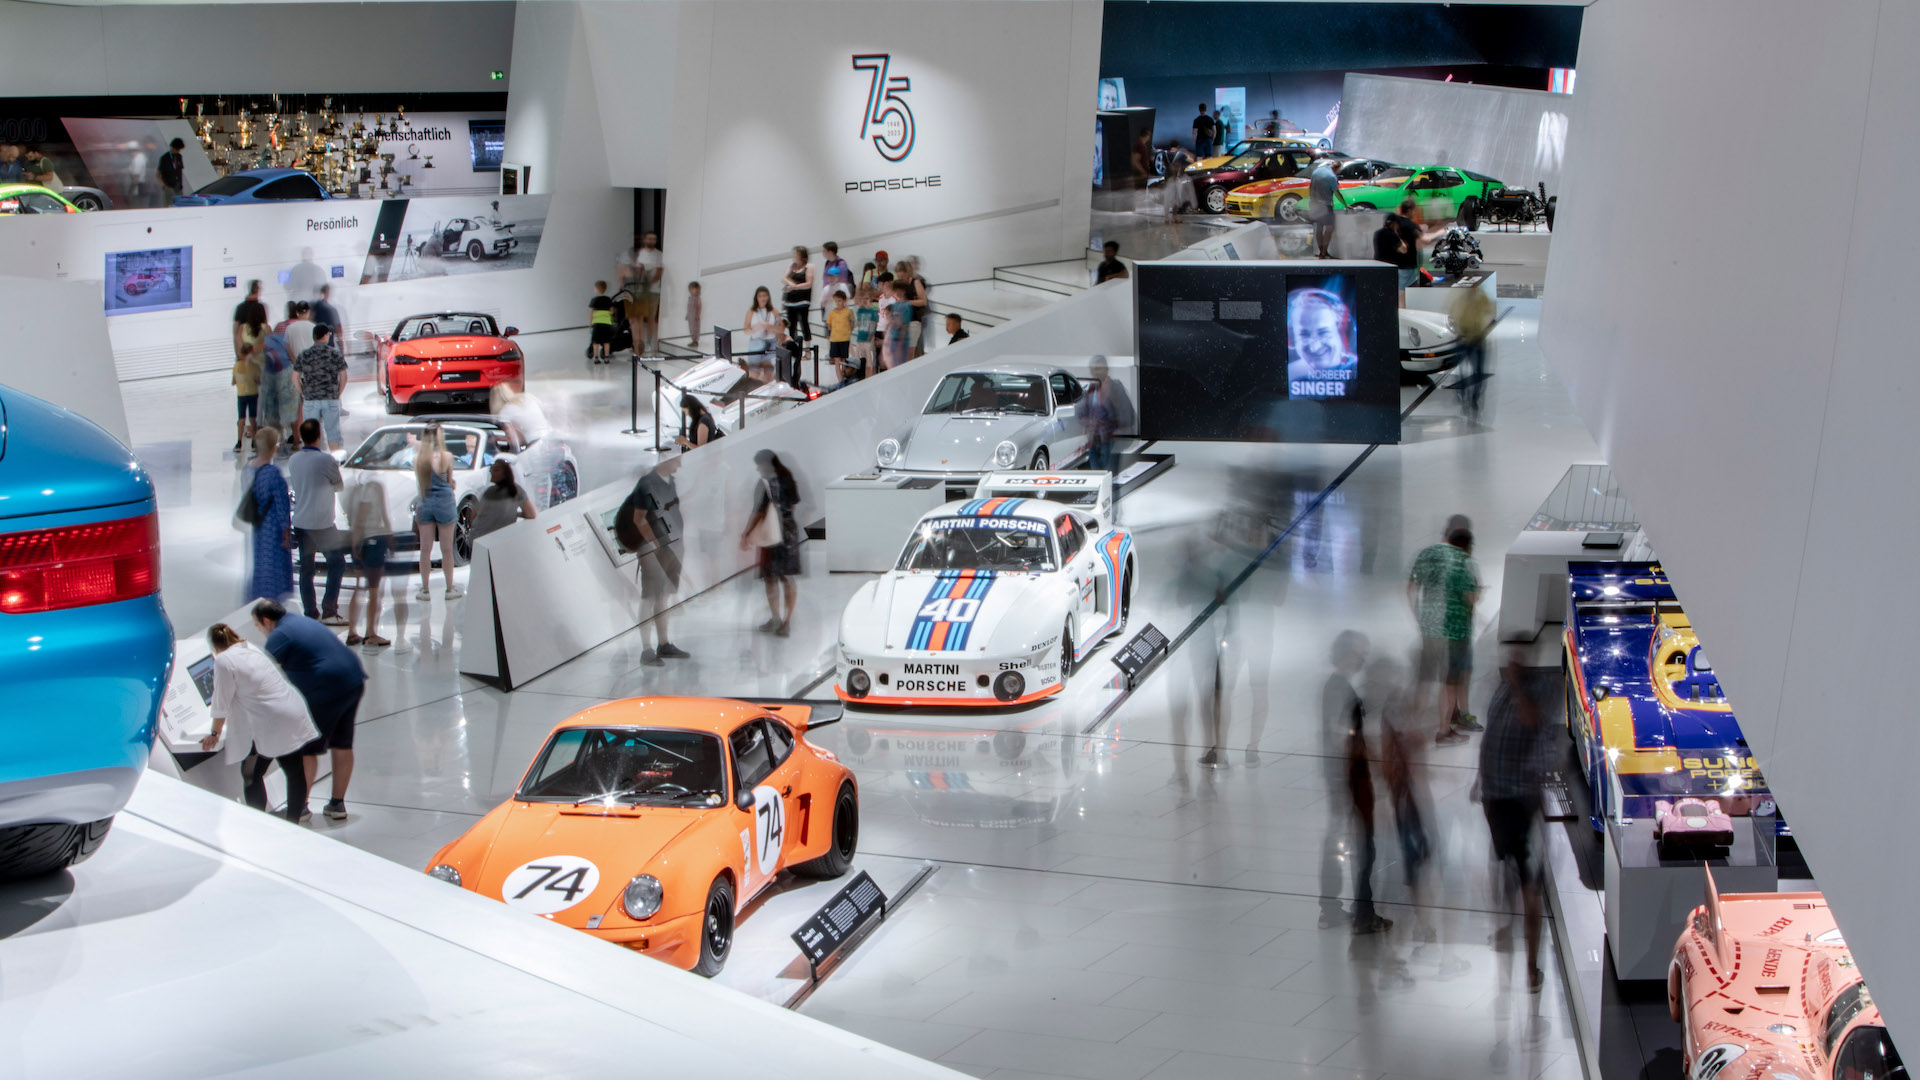 ’75th Anniversary’ exhibition opens at Porsche Museum in Stuttgart